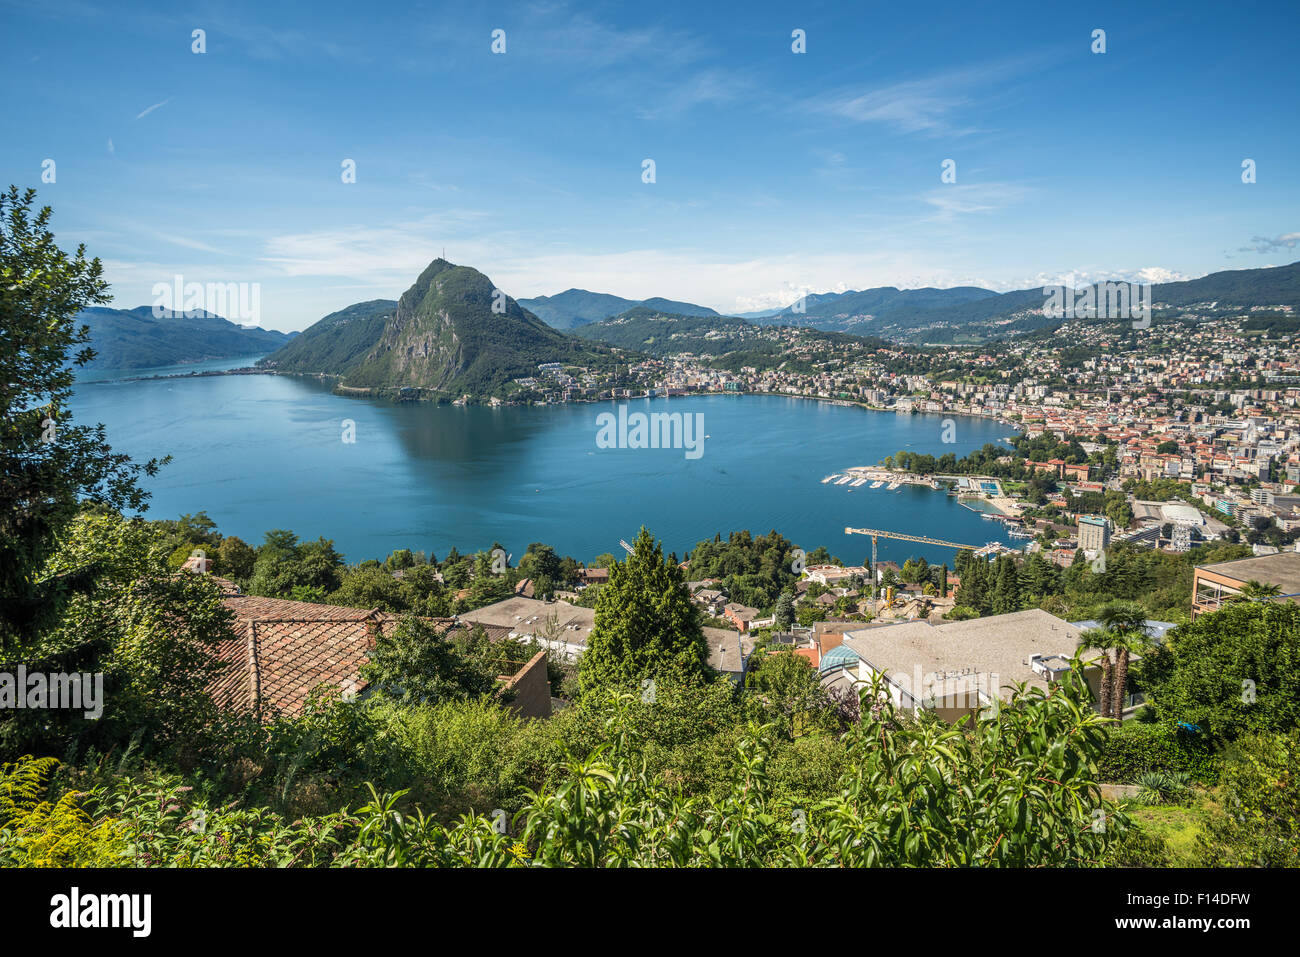 Panoramic view of Lugano, Ticino canton, Switzerland Stock Photo